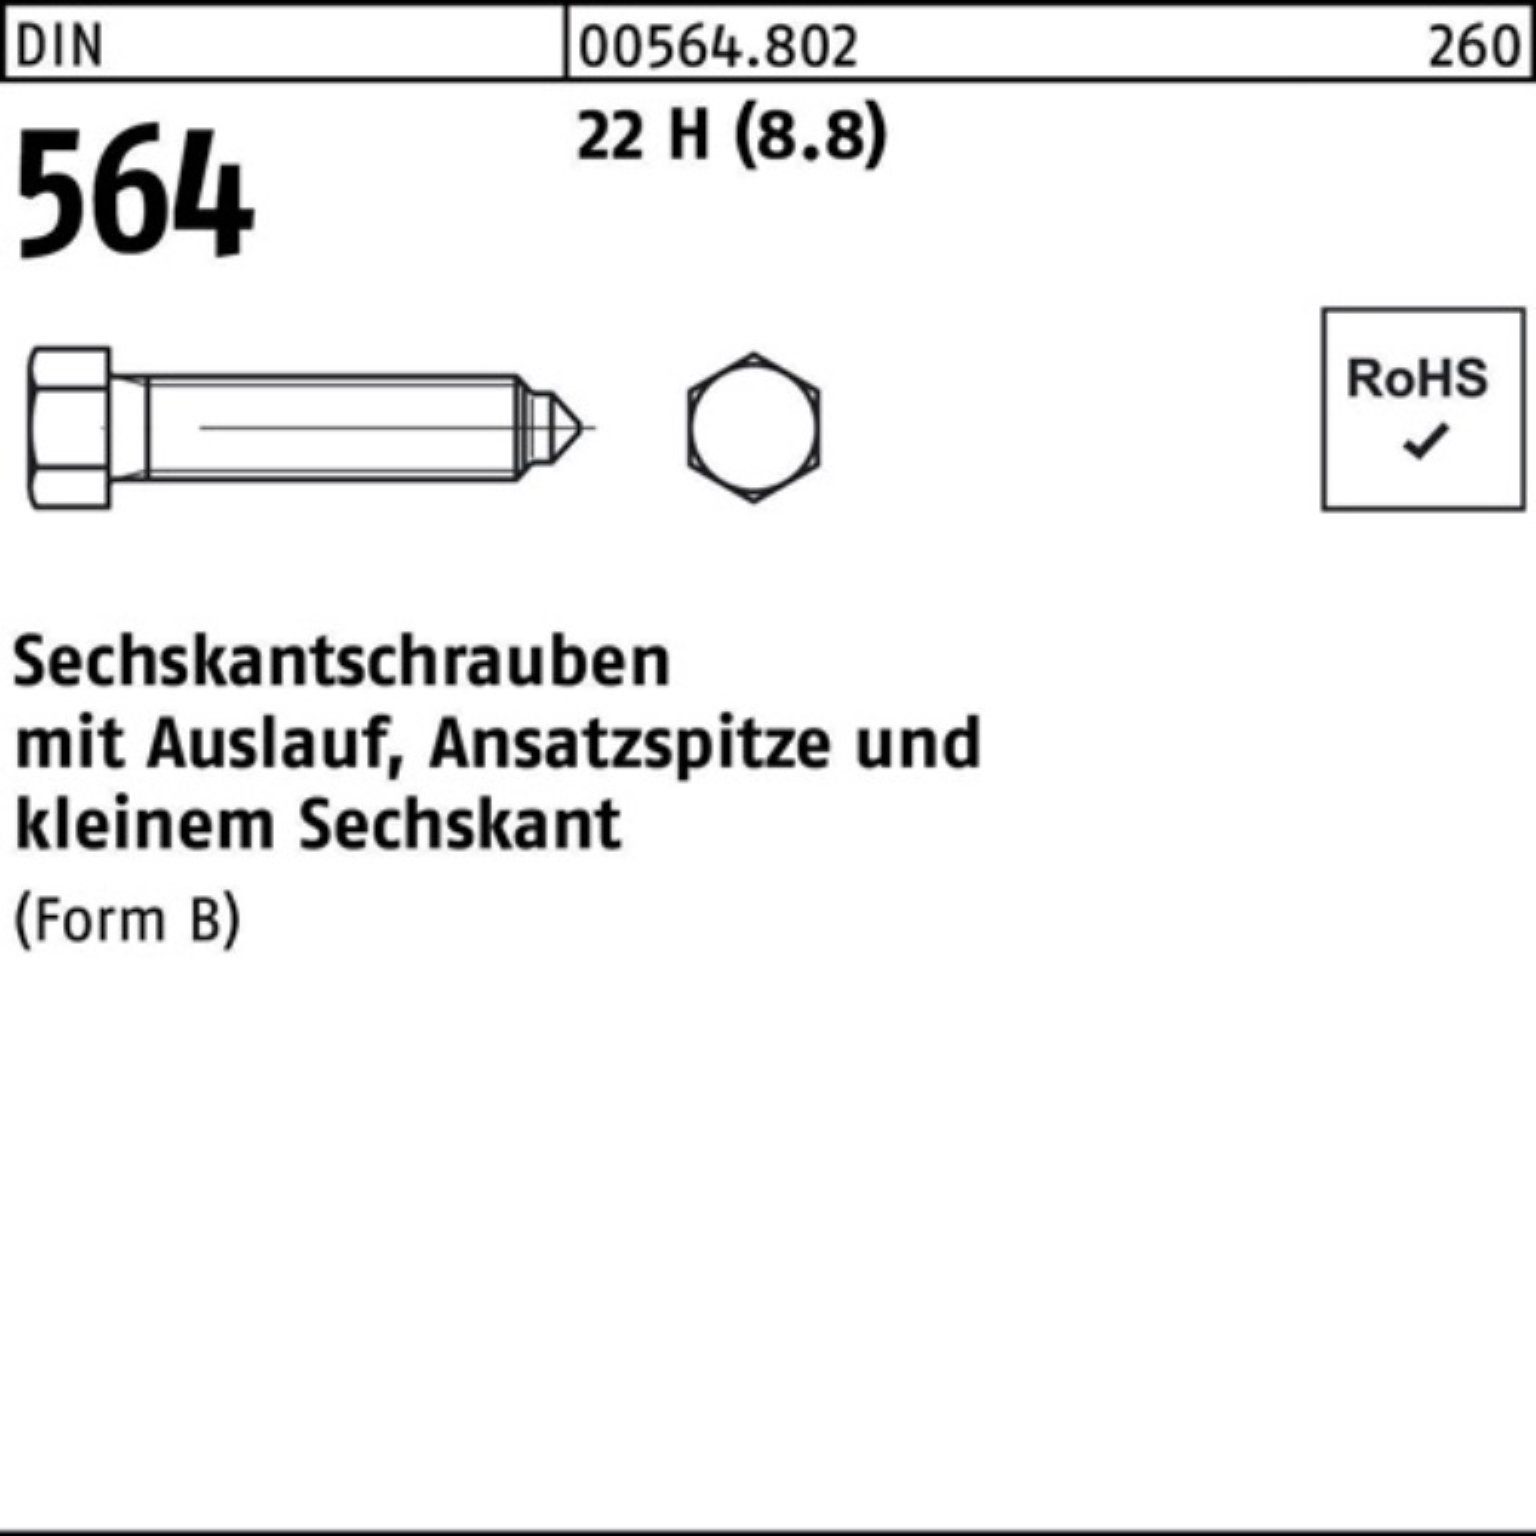 Reyher Sechskantschraube 100er Pack Sechskantschraube DIN 564 Ansatzspitze/Auslauf BM 16x 90 22